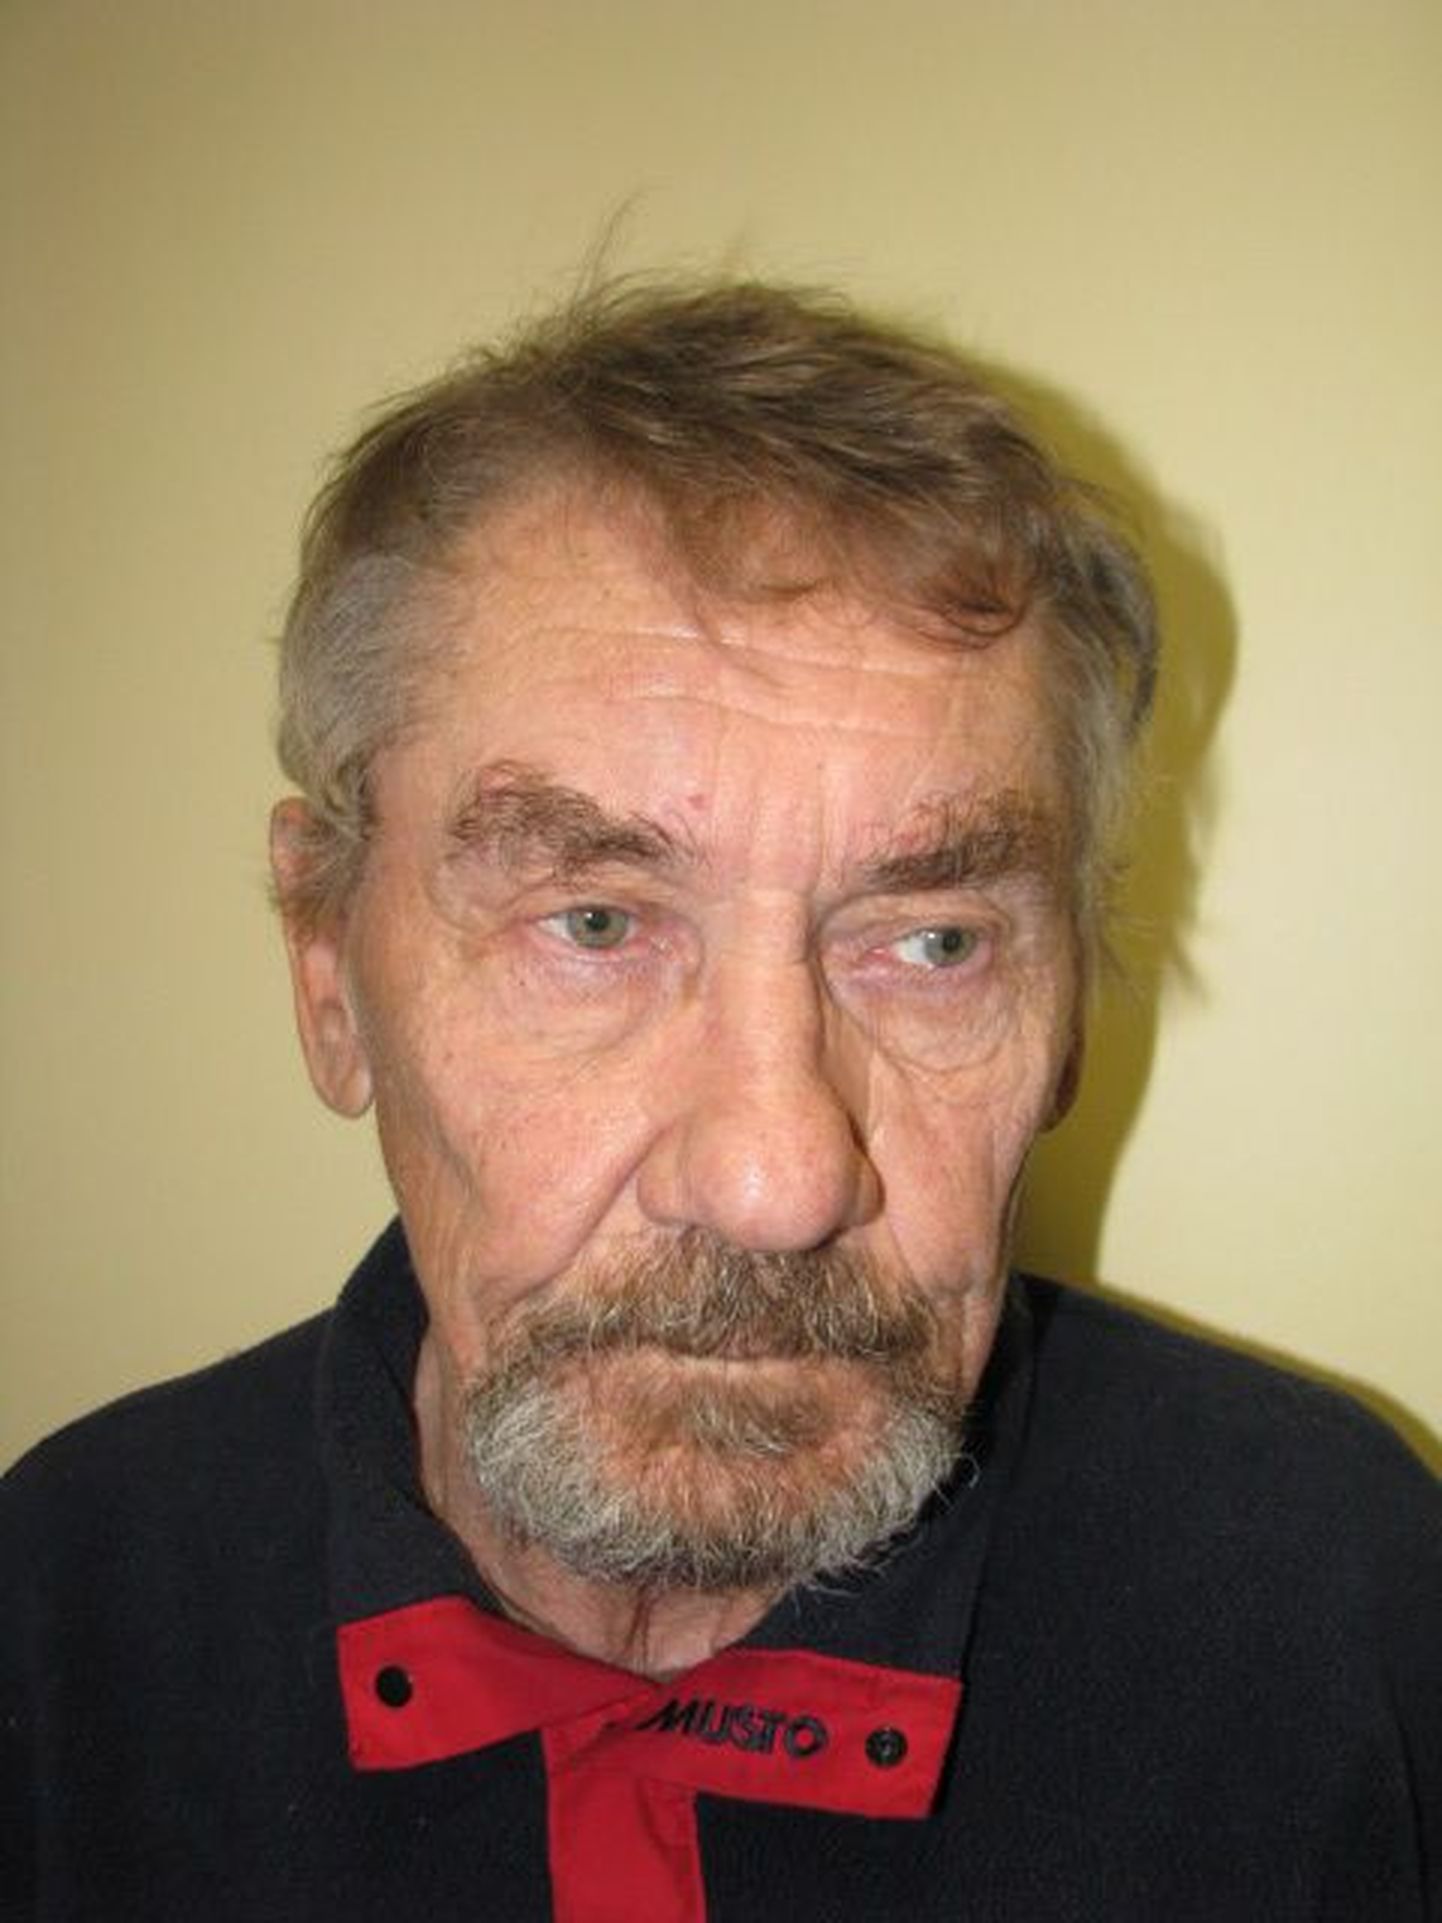 72aastane Vladimir, keda kahtlustatakse seksuaalkuritegudes lapseealiste suhtes.